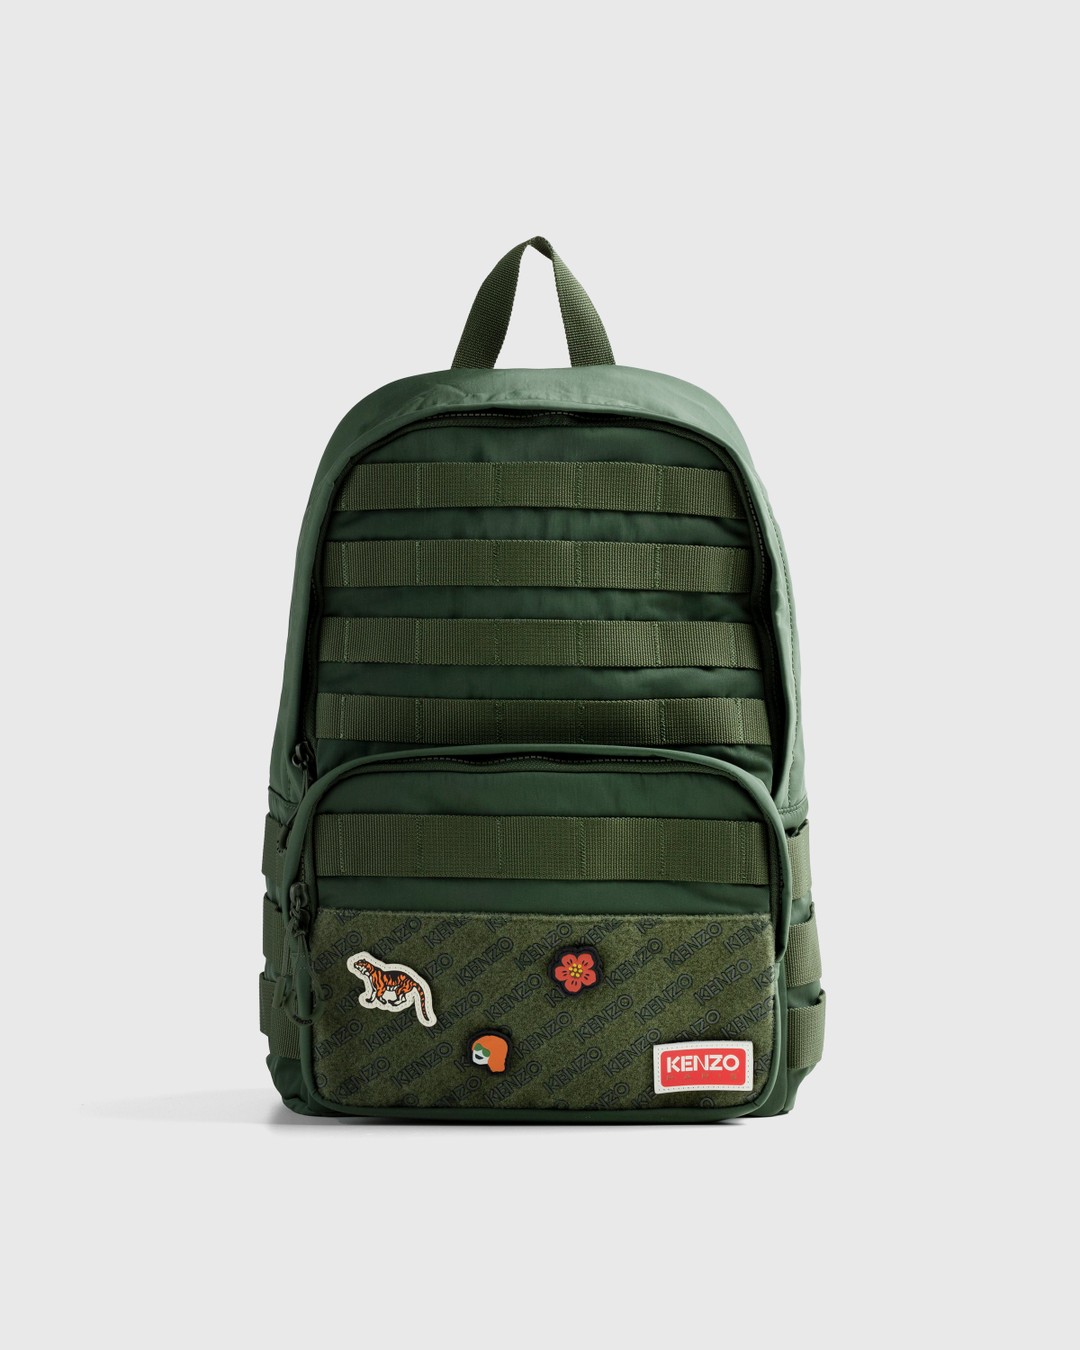 Kenzo – Jungle Backpack Dark Khaki - Backpacks - Green - Image 1